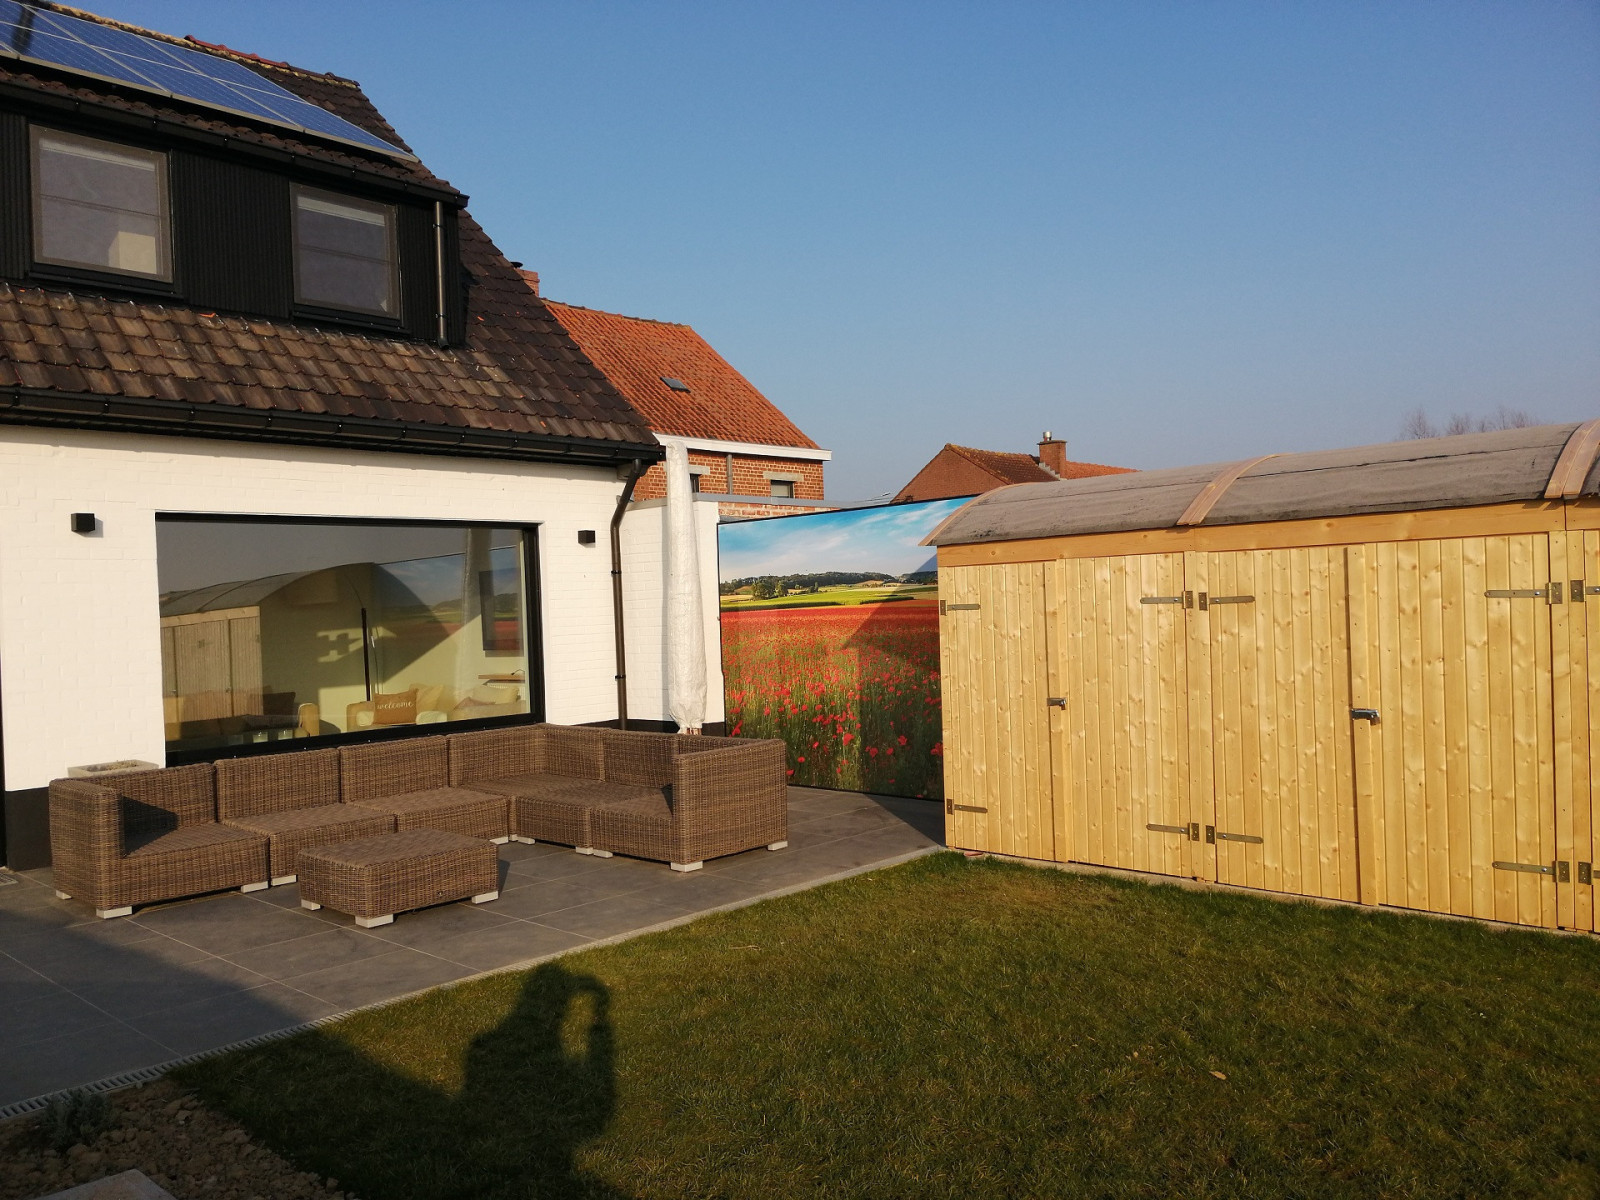 Luxe vakantiehuisje voor 6 personen in Zandvoorde, in de buurt van Zonnebeke - Belgie - Europa - Zandvoorde